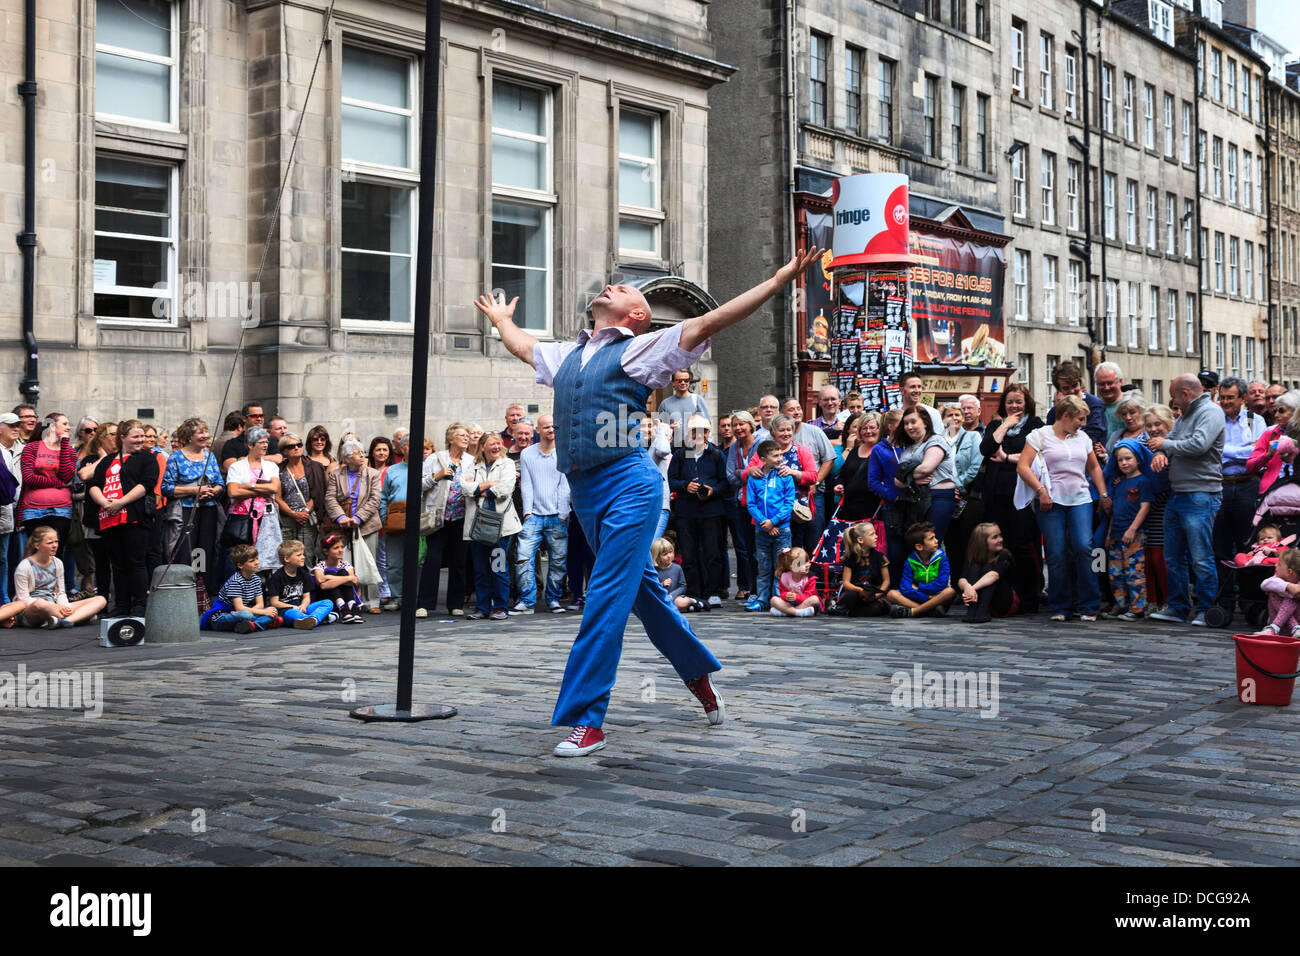 Acrobat performing un équilibre sur un poteau, Royal Mile, Edinburgh Fringe Festival, Édimbourg, Écosse, Royaume-Uni Banque D'Images